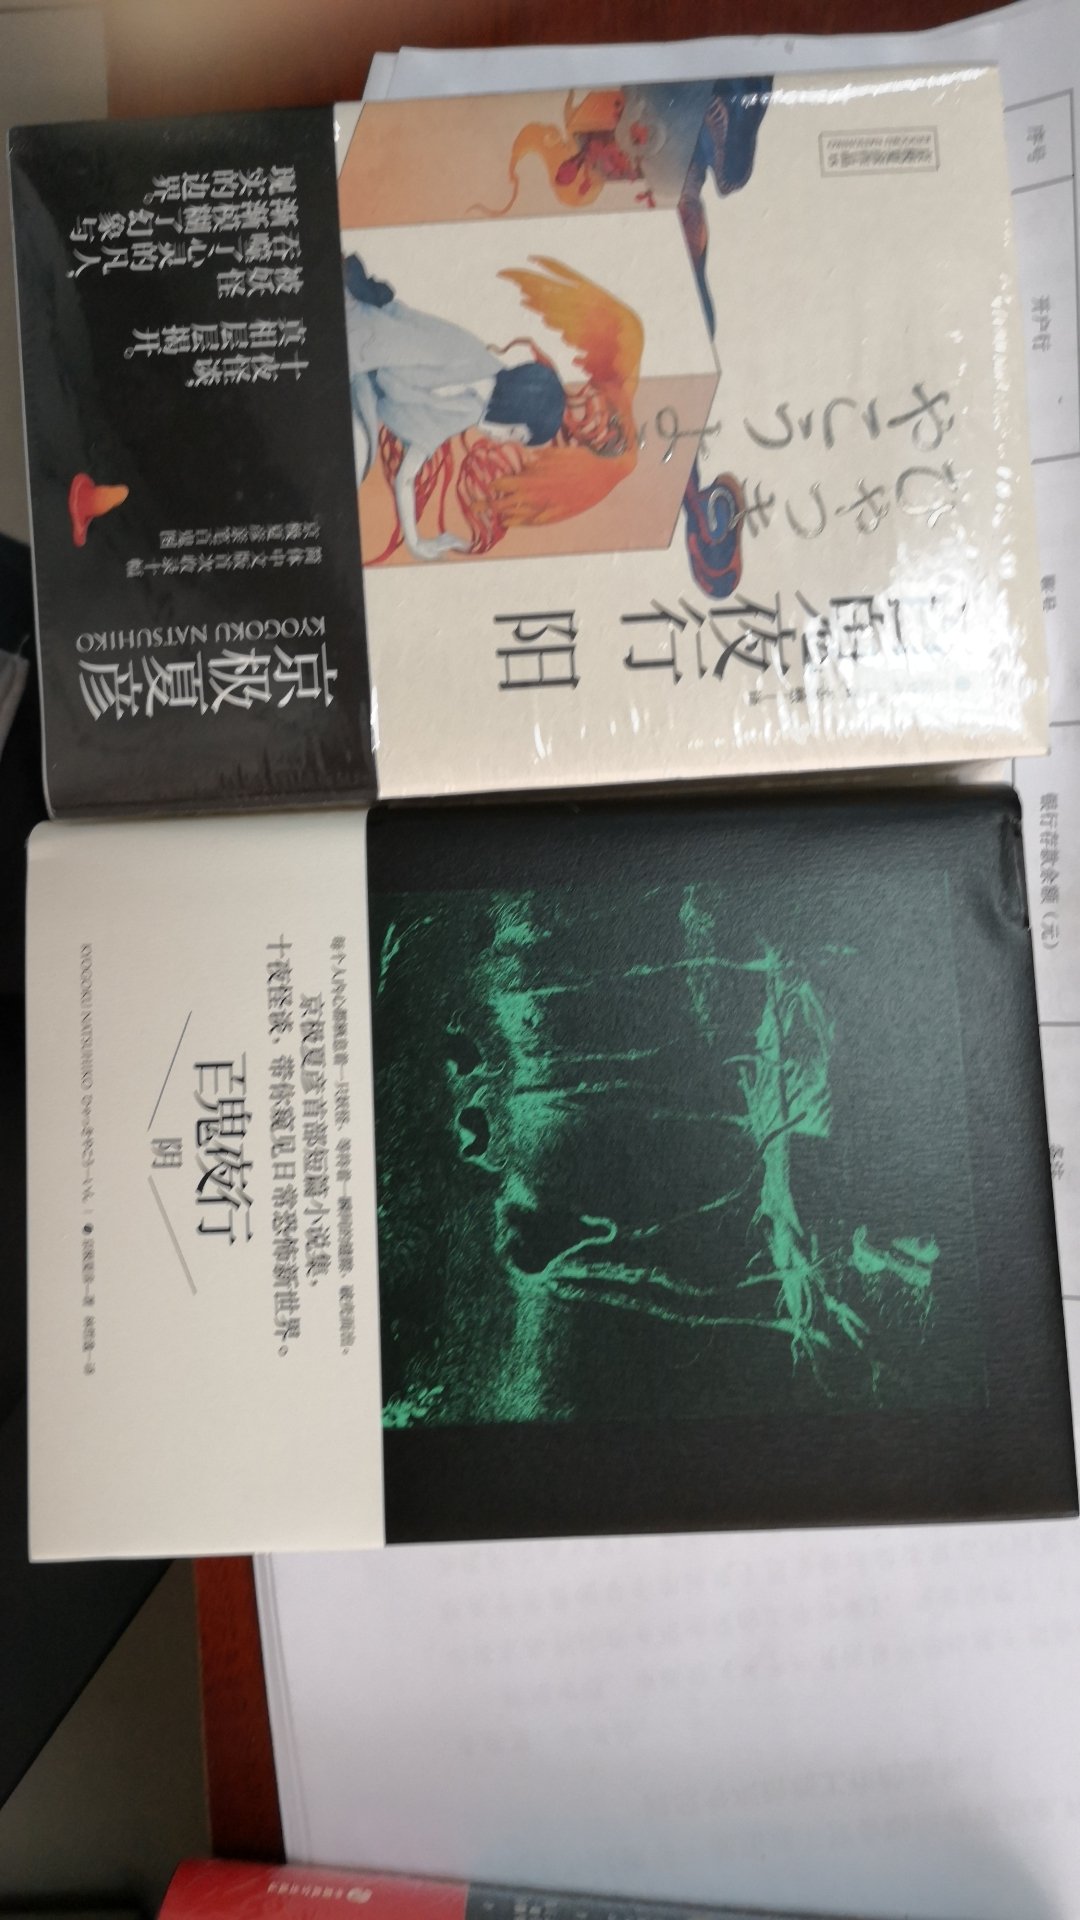 很喜欢京极夏彦的小说，以前看过百物语系列，这次开始百鬼夜行系列，书包装很好，字体排版很舒服，喜欢。